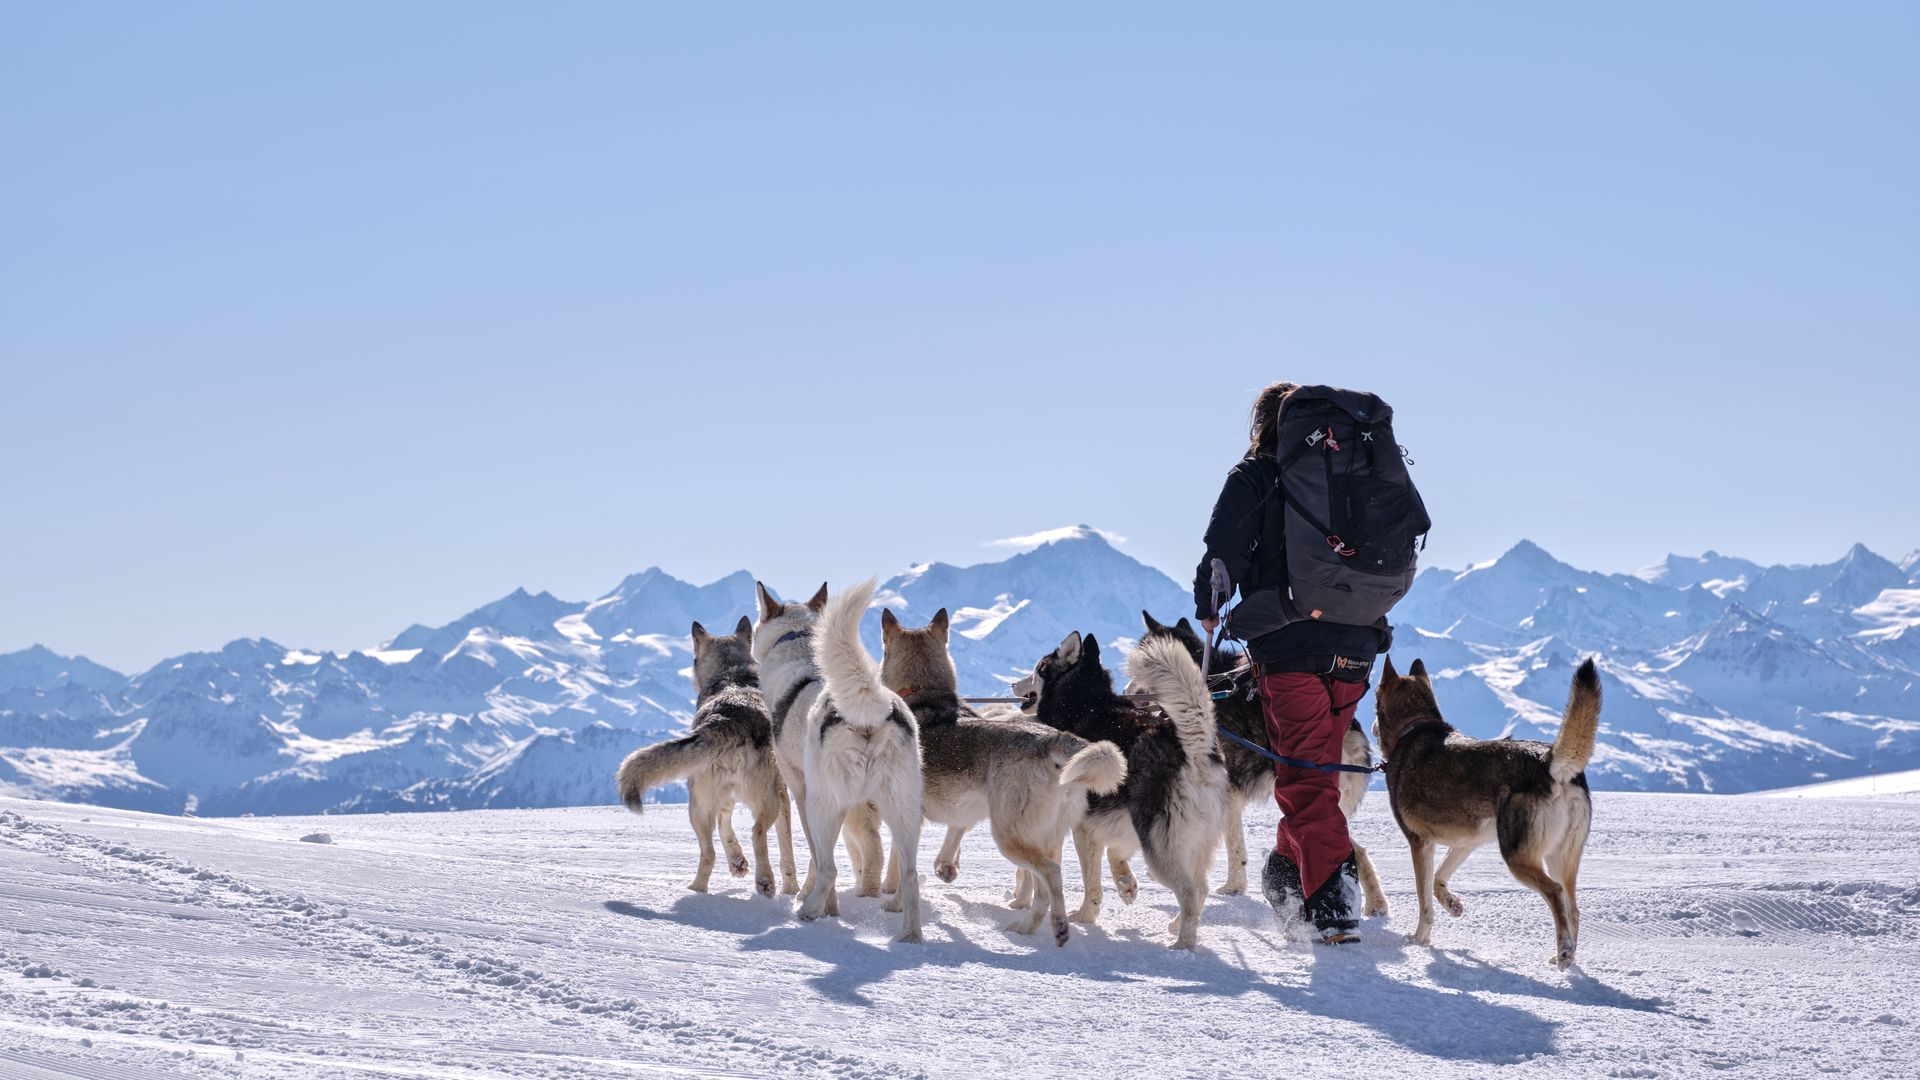 Die Musherin und ihre 6 Schlittenhunde in Glacier 3000 in Les Diablerets, von hinten gesehen.